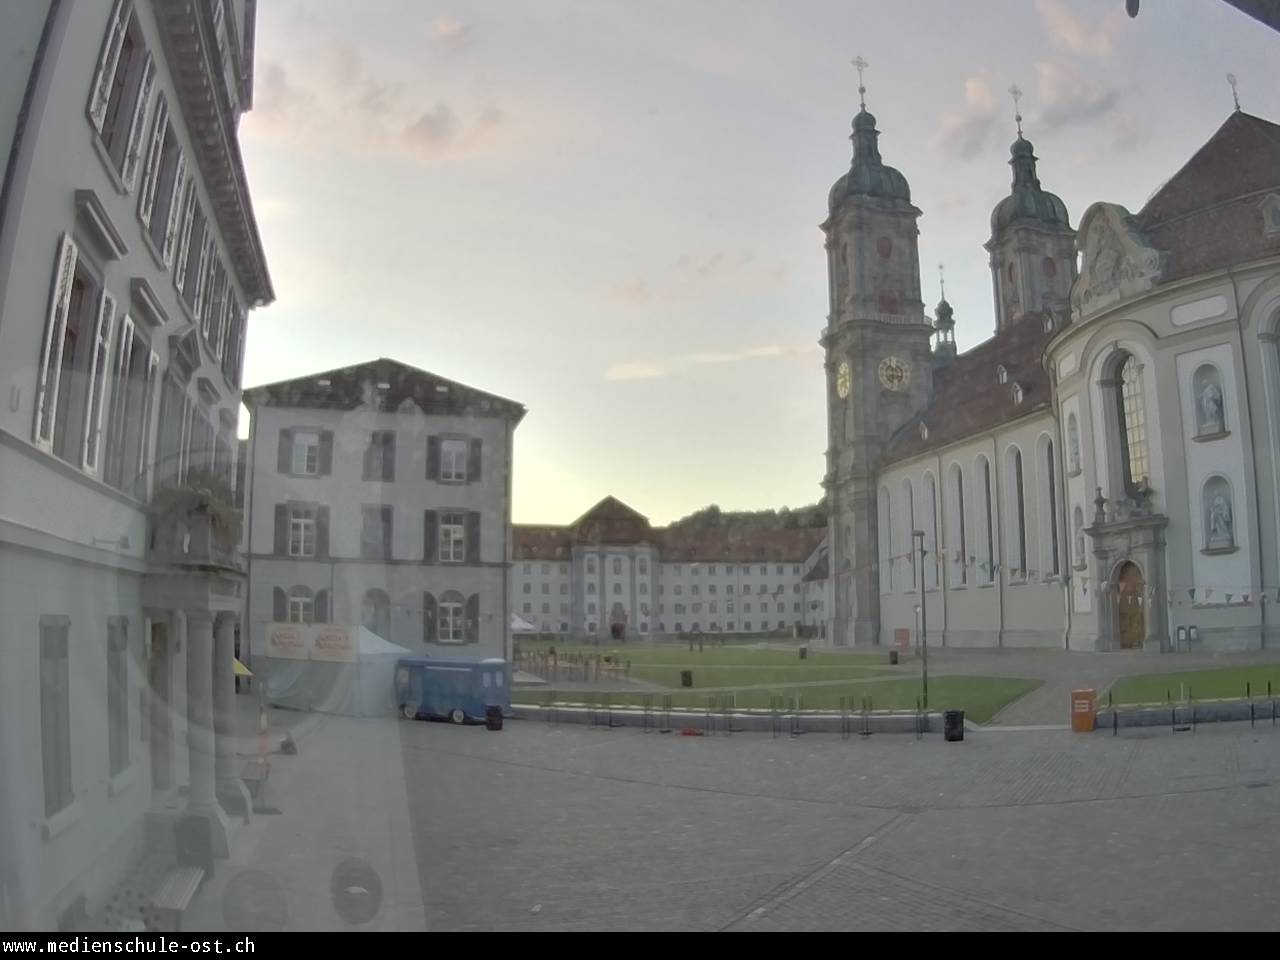 St. Gallen Je. 05:46